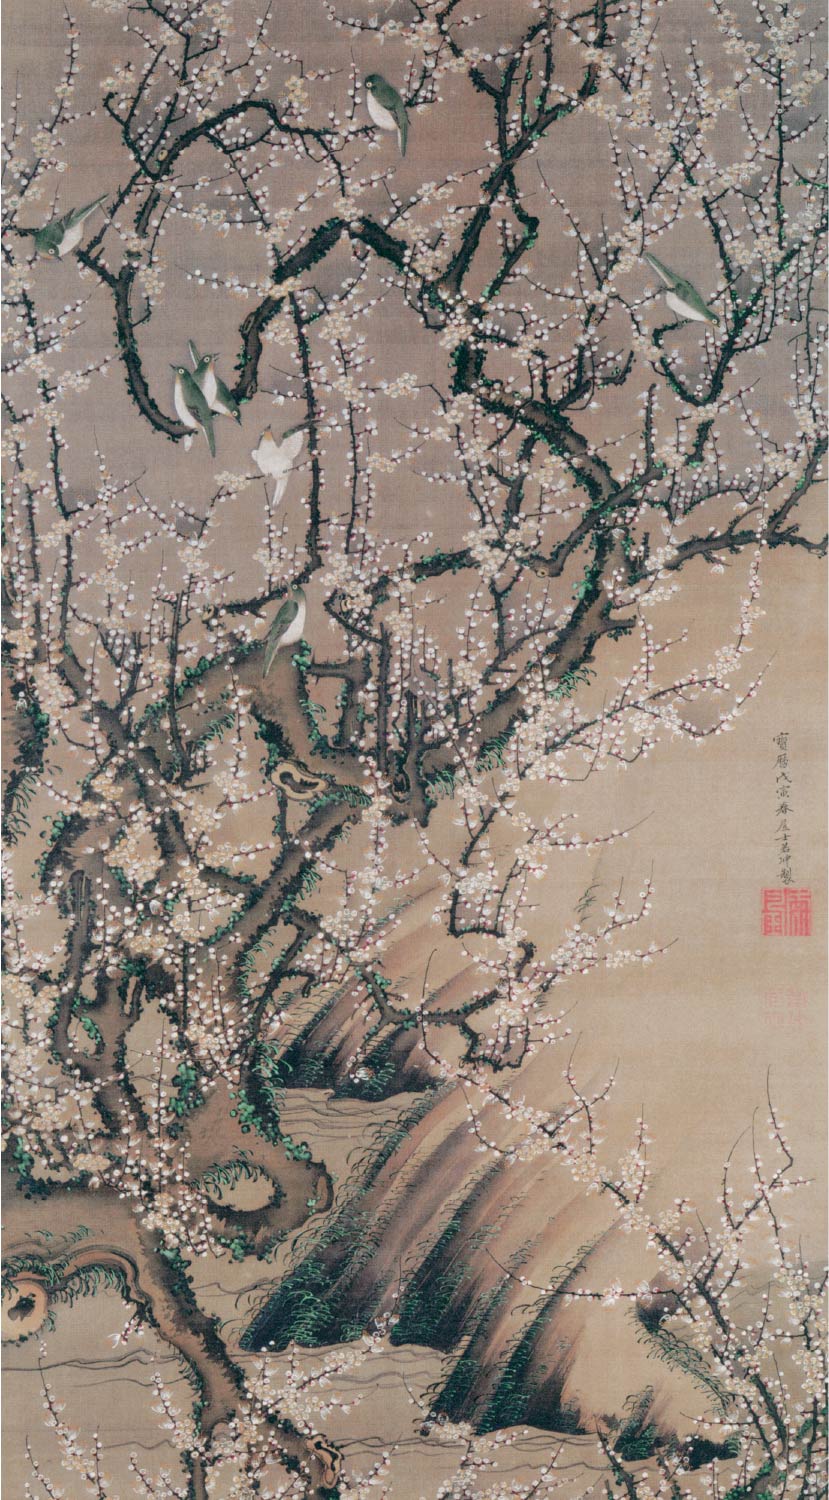 【無料壁紙】伊藤 若冲「梅花小禽図 (1758)」 / Ito Jakuchu_Baika Shokin-zu (Plum Blossoms and Small Birds) (1758)